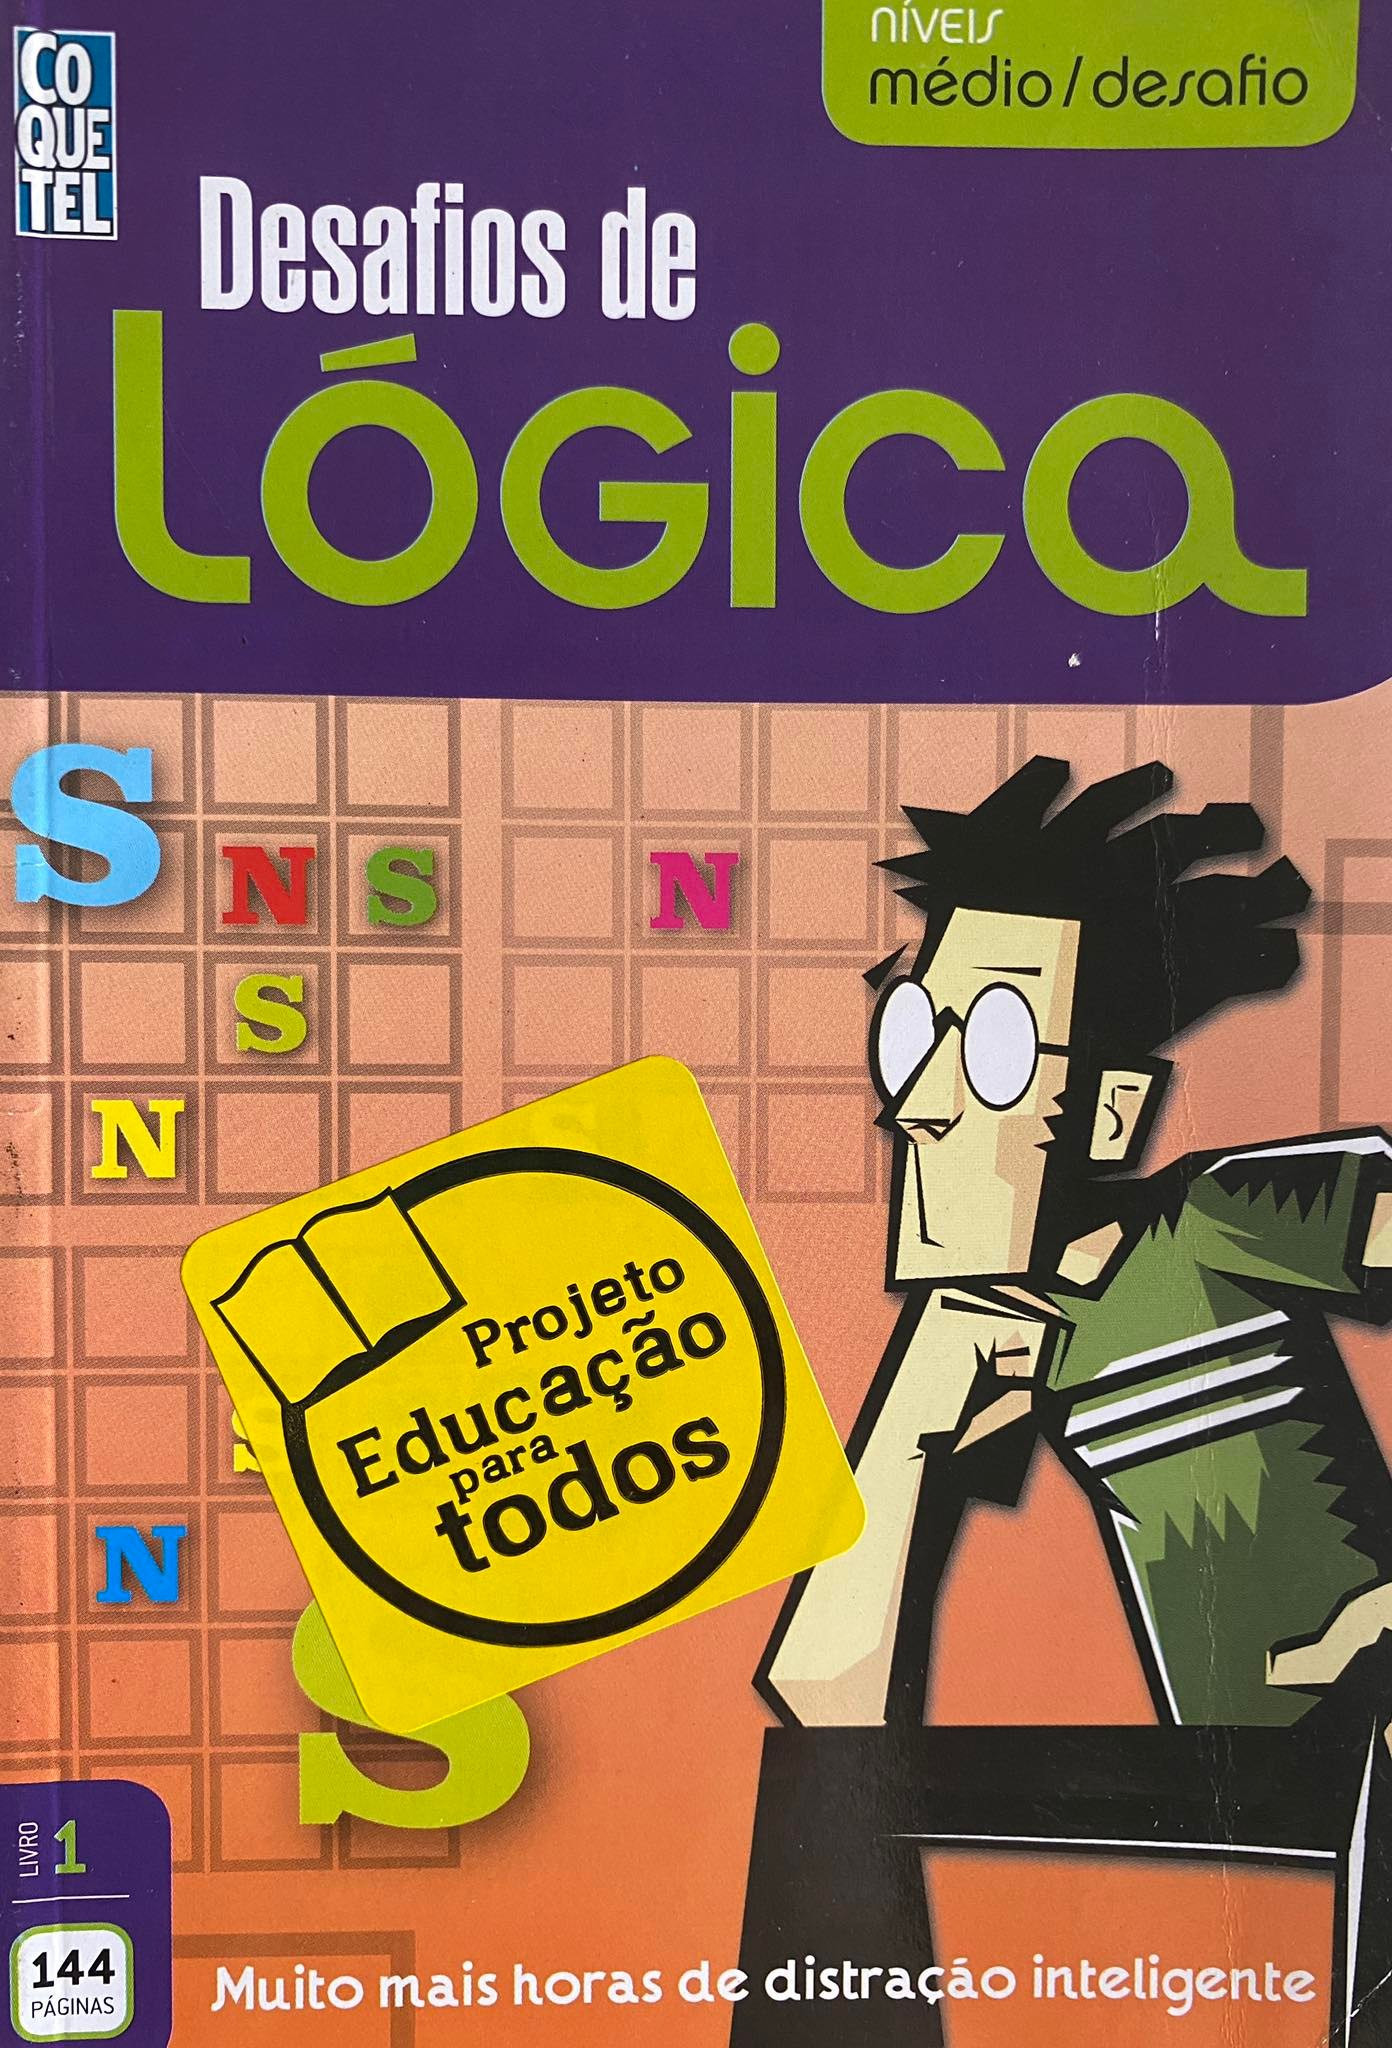 Livro Coquetel Desafios De Logica Ed 24 - 9788500508271